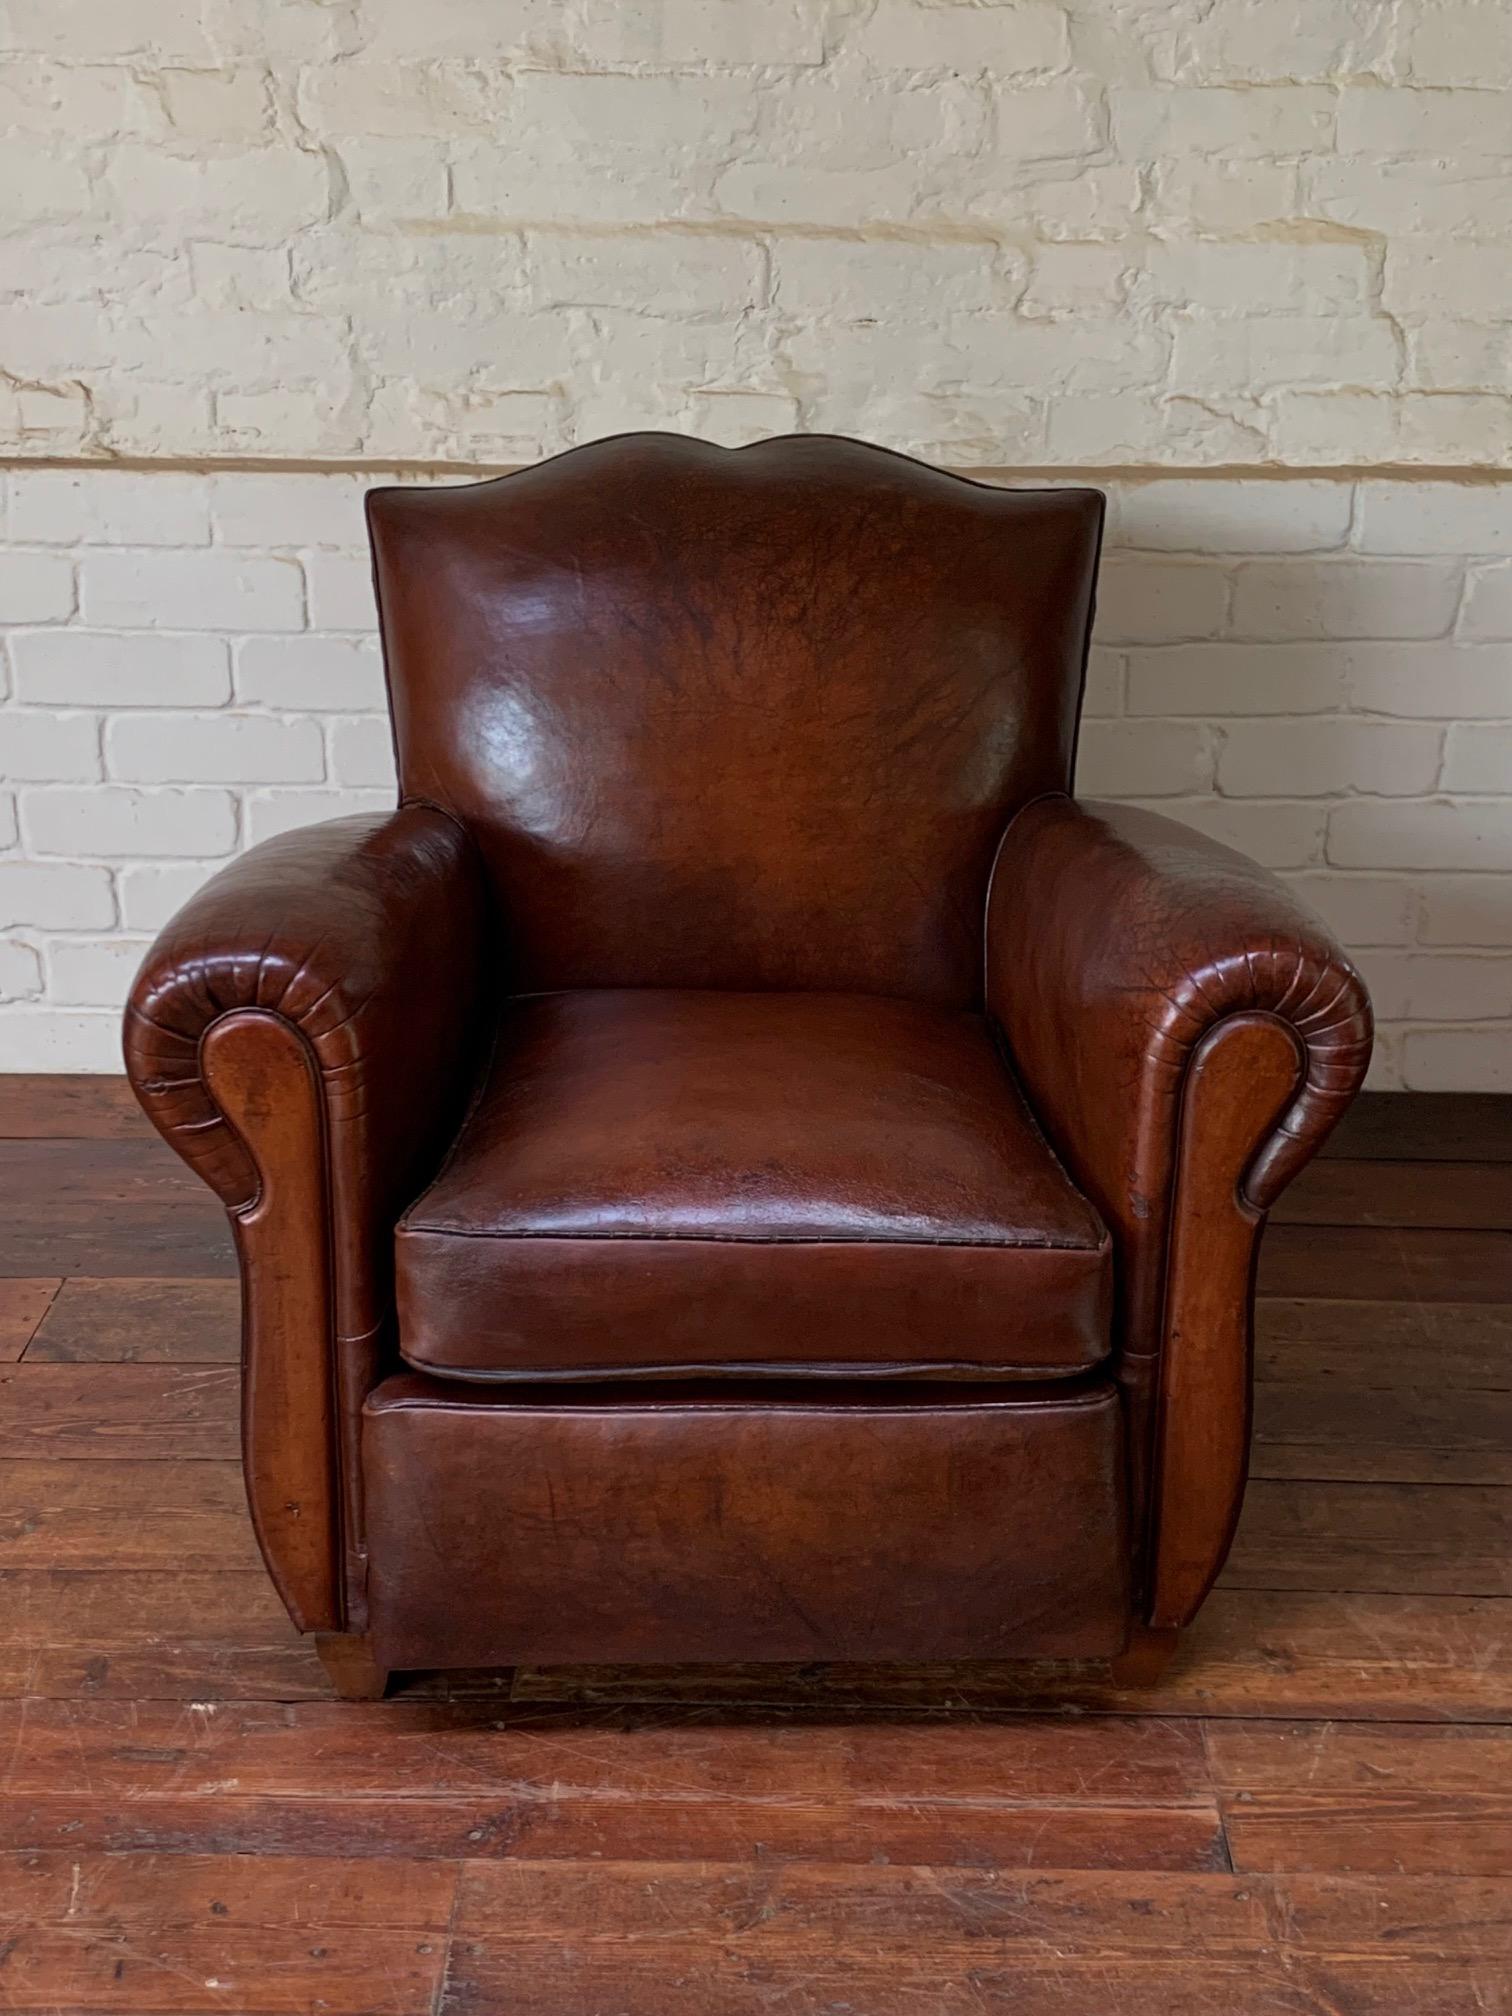 Was für ein schöner Stuhl. Das reiche havannabraune Leder mit seiner weichen, wächsernen Patina ist in einem wunderschönen Zustand. Der Stuhl selbst ist ein sehr schönes Modell und hat einige sehr schöne Designdetails, die ihn zu einem sehr